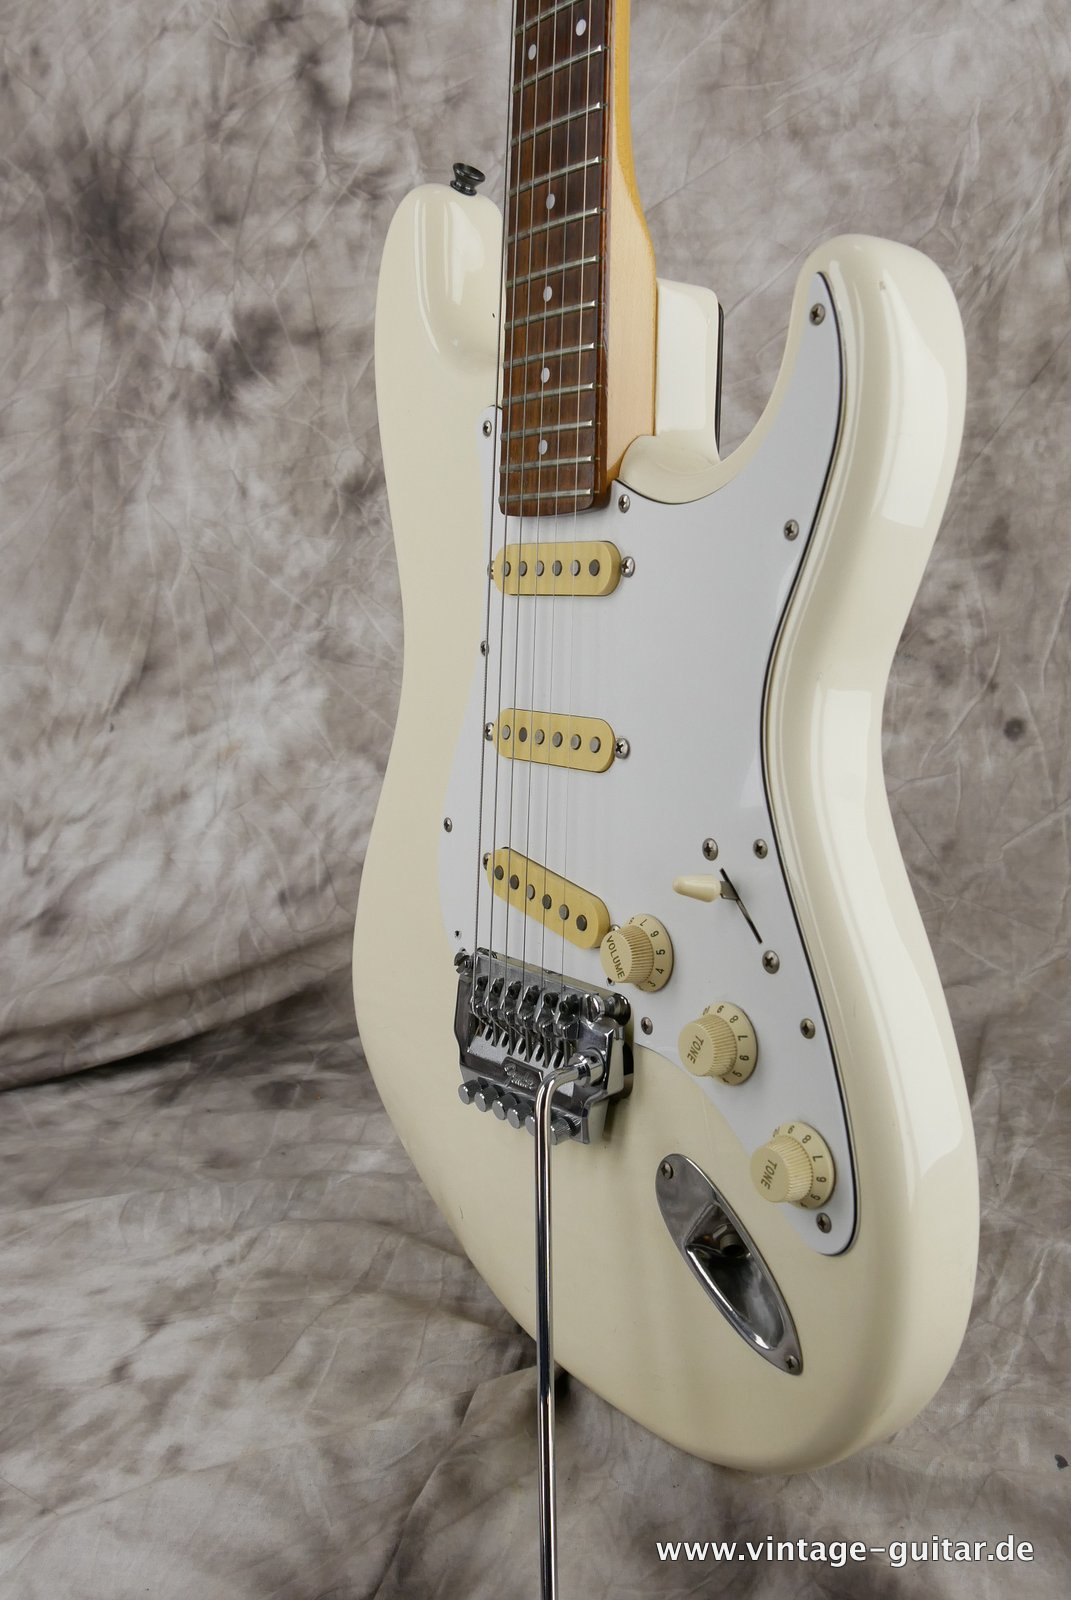 Fender-Stratocaster-MIJ-1985-Kahler-Tremolo-white-018.JPG